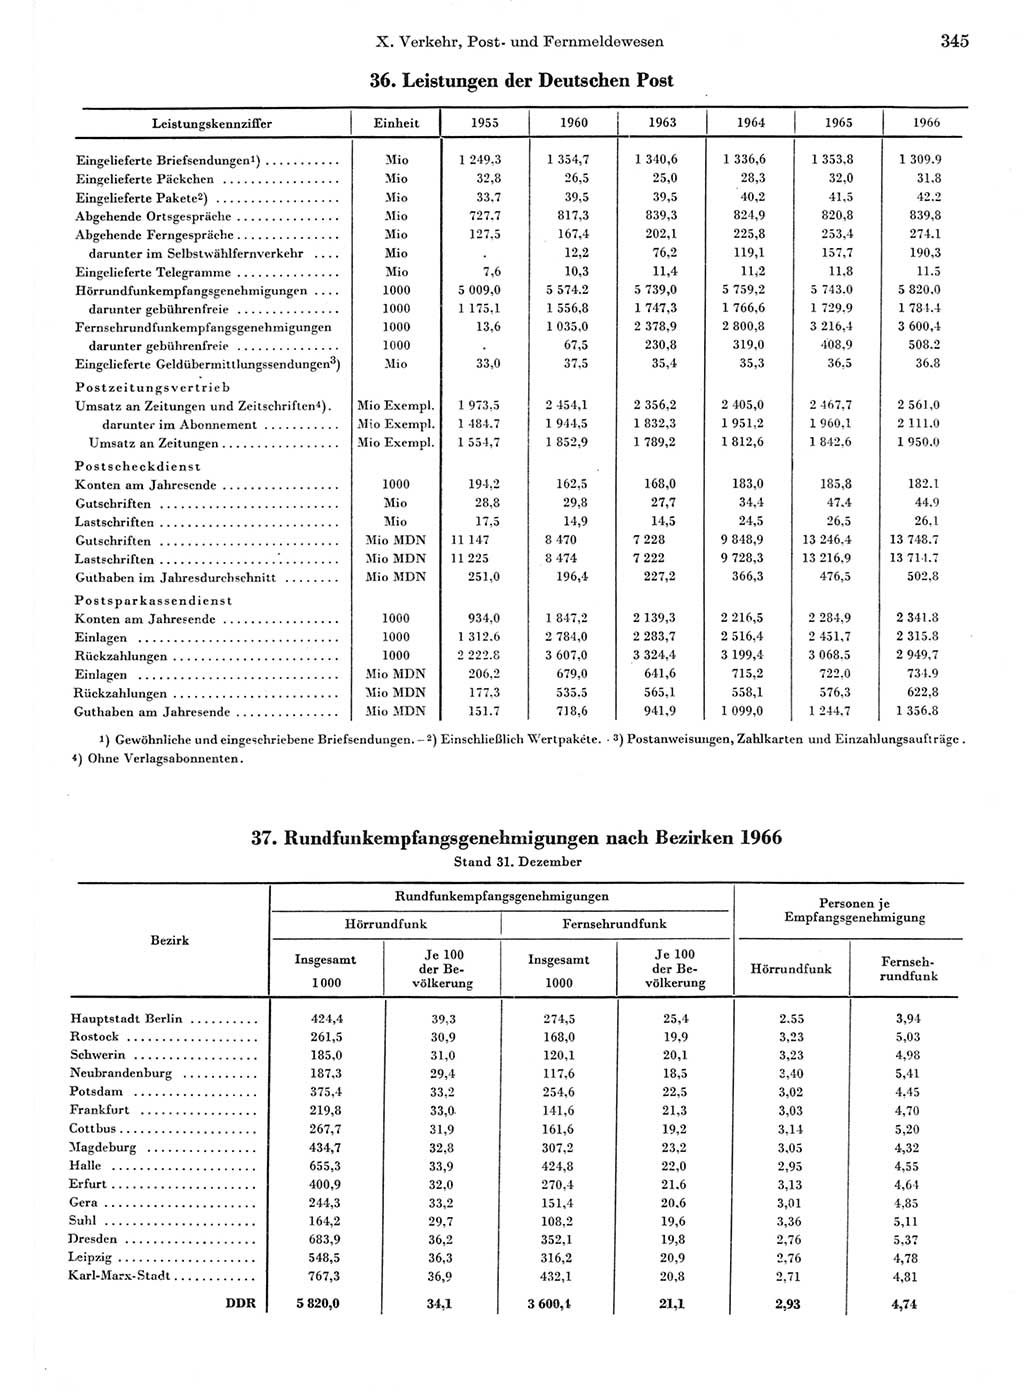 Statistisches Jahrbuch der Deutschen Demokratischen Republik (DDR) 1967, Seite 345 (Stat. Jb. DDR 1967, S. 345)